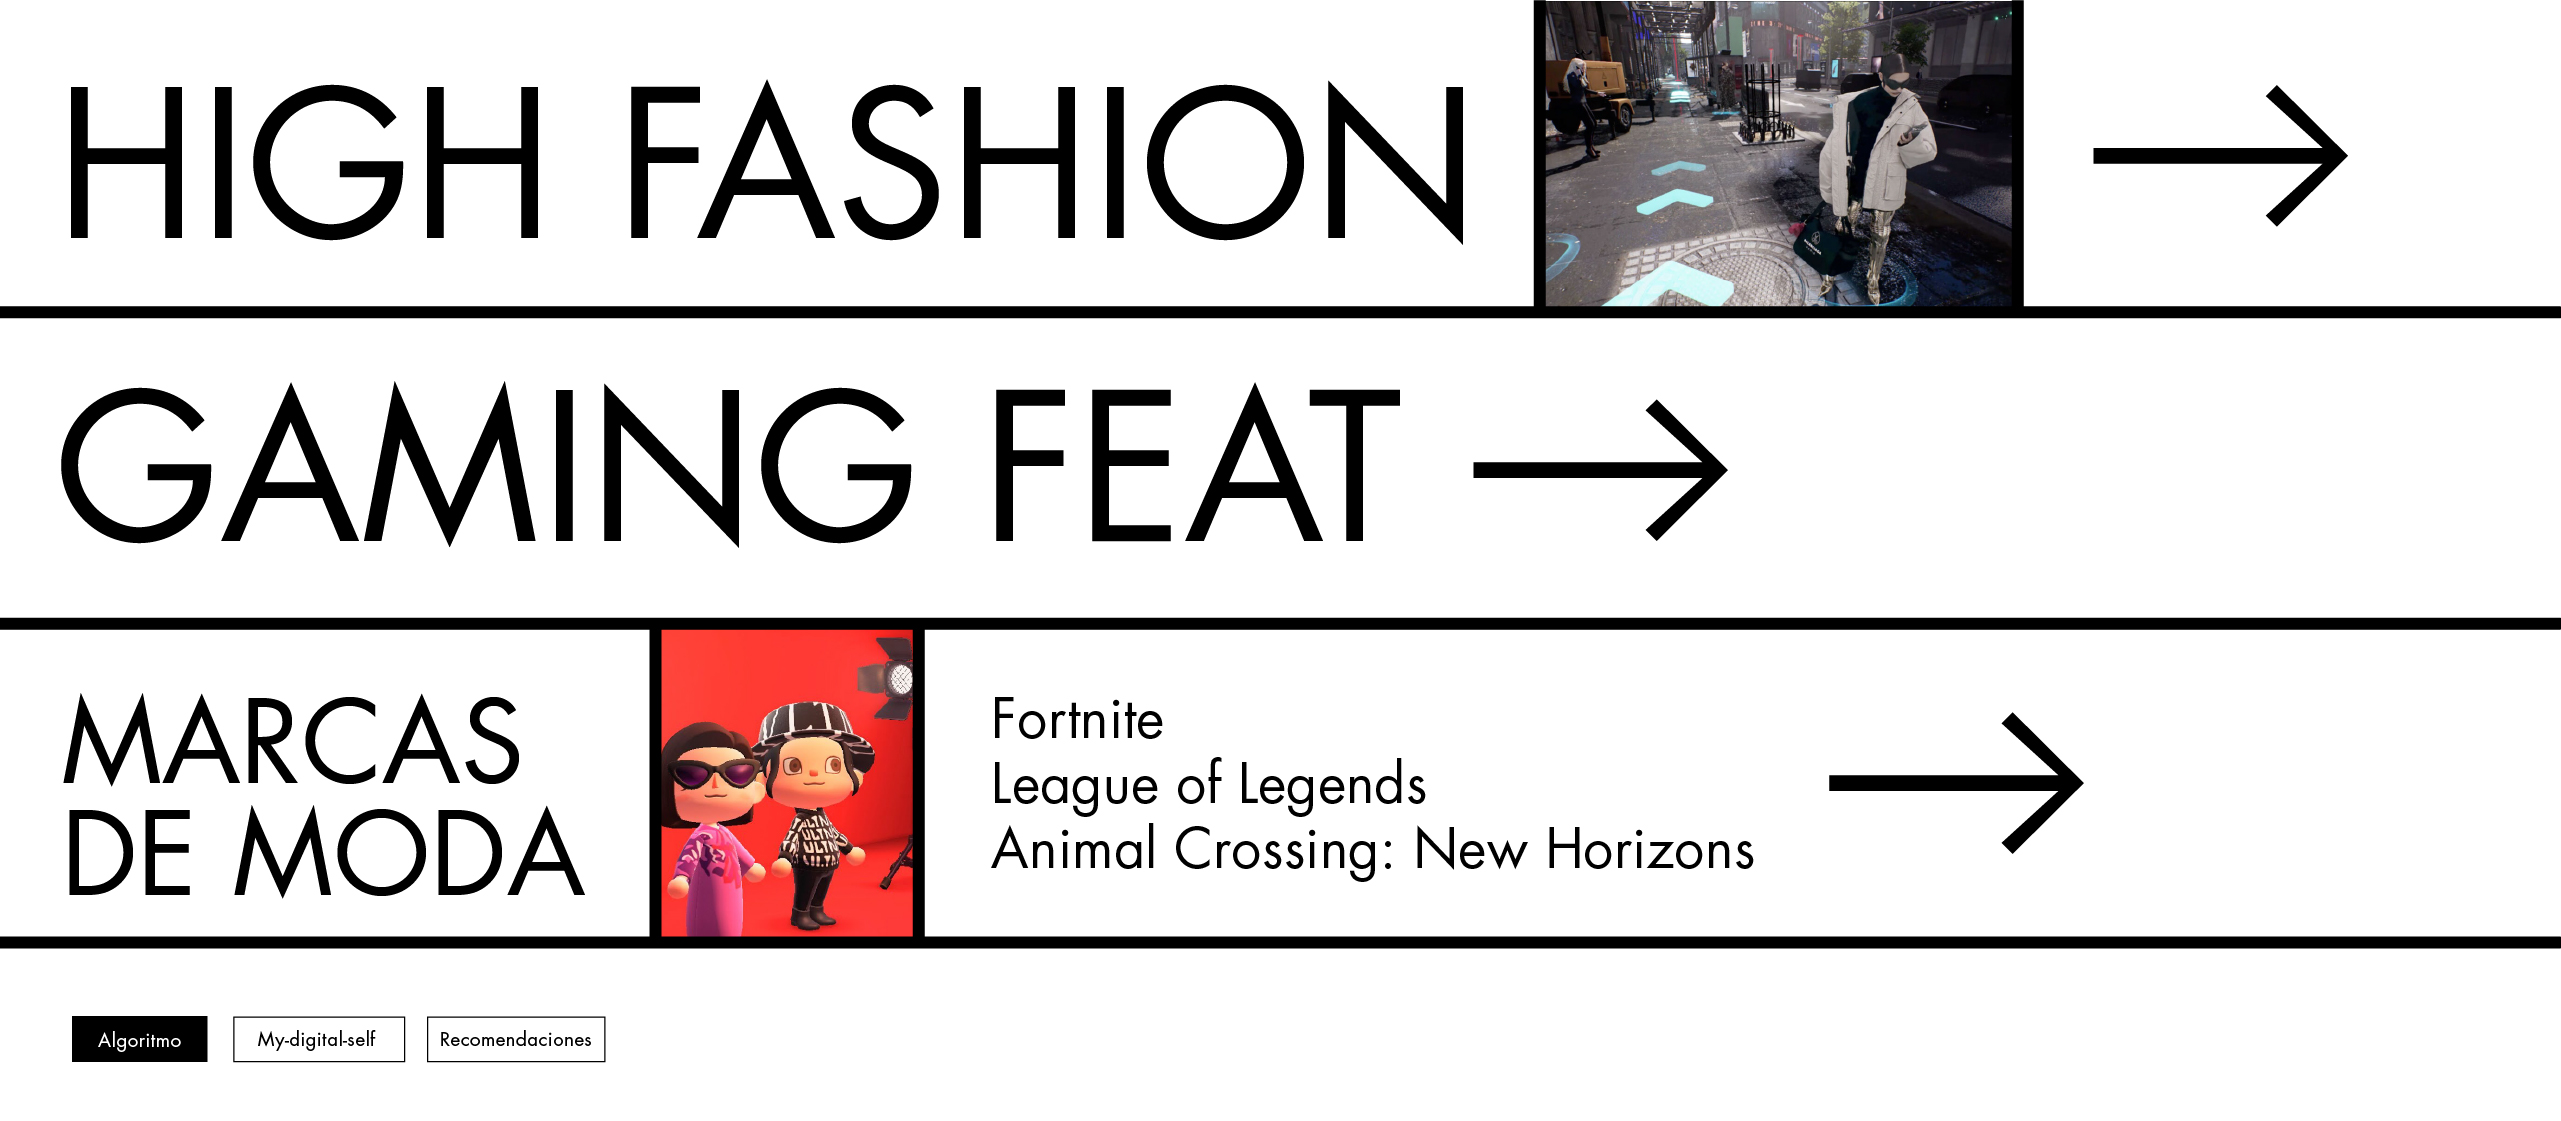 High Fashion Gaming – Juegos featuring marcas de moda